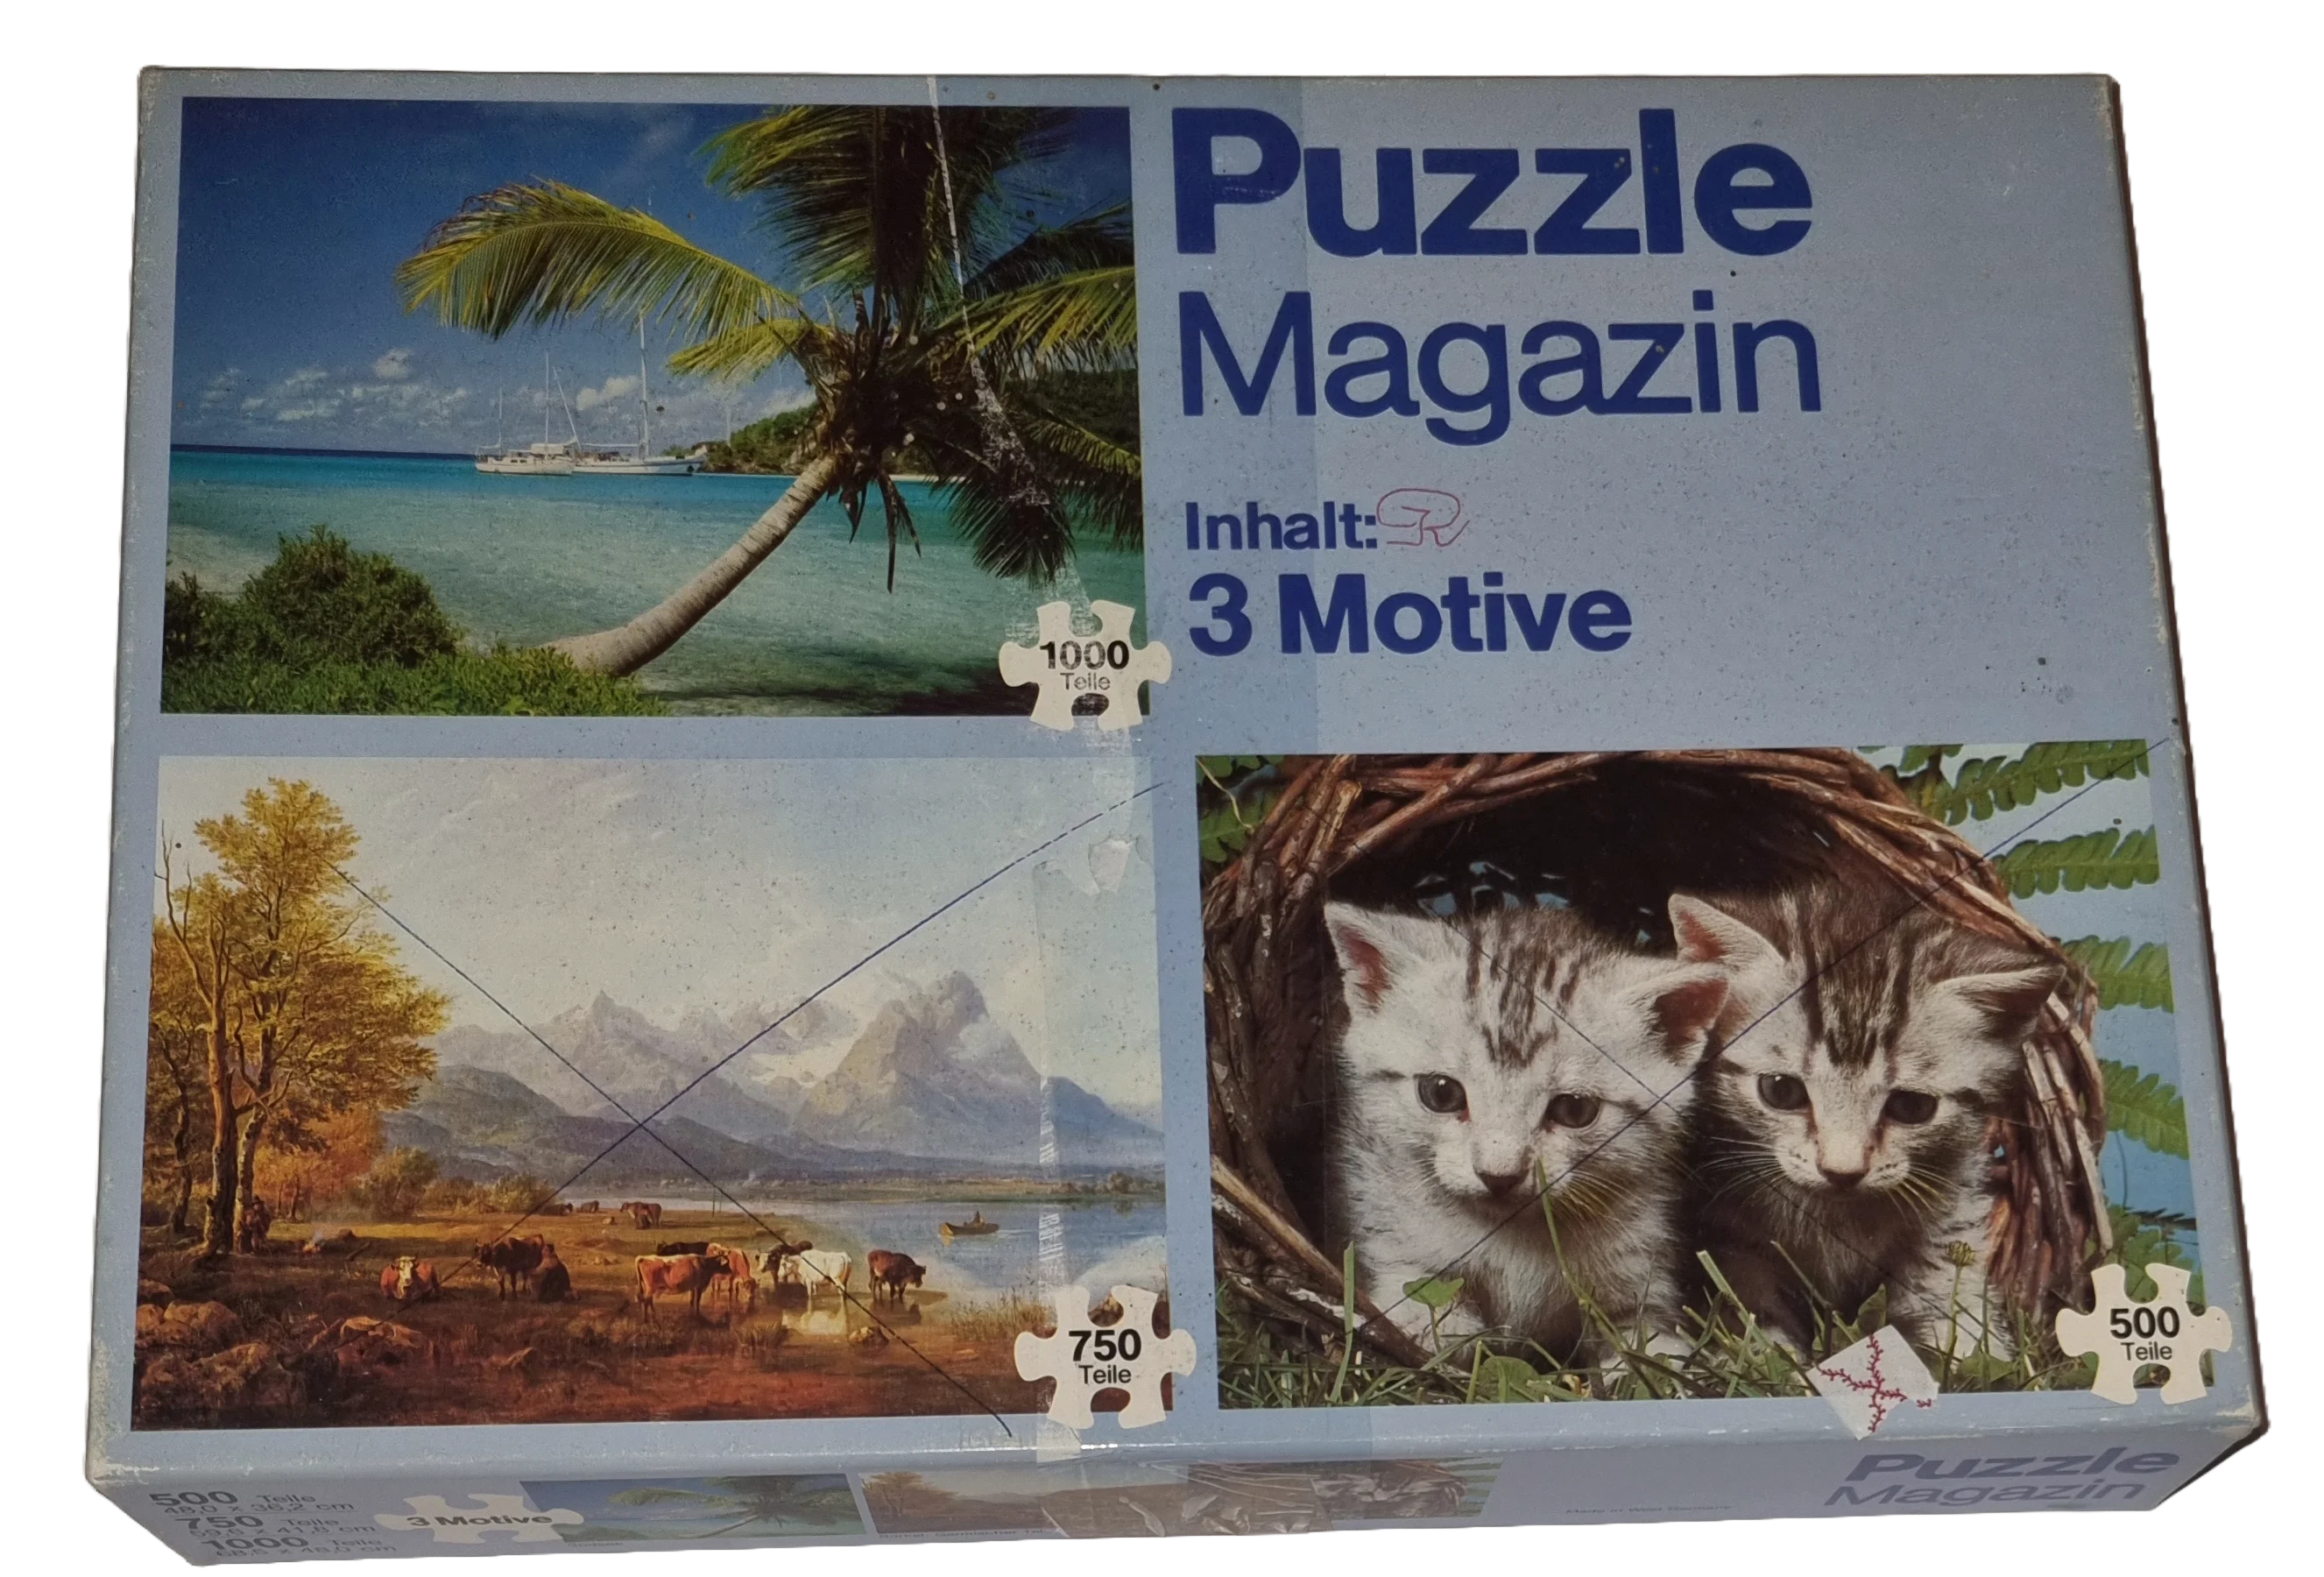 Puzzle Magazin 500, 750, 1000 Teile Riesen Puzzle Magazin